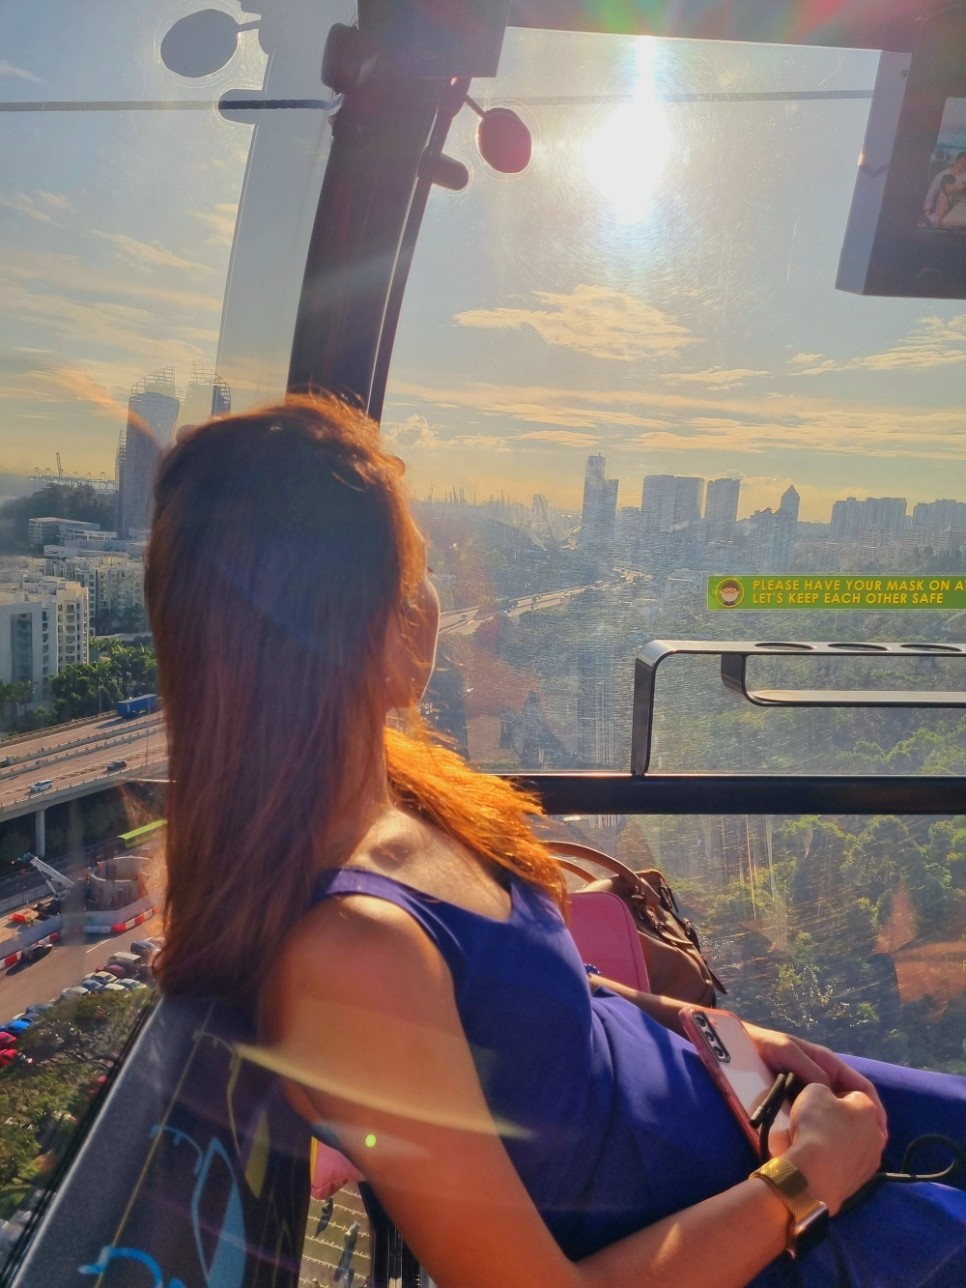 싱가포르 여행 센토사섬 케이블카 후기 탑승권 할인